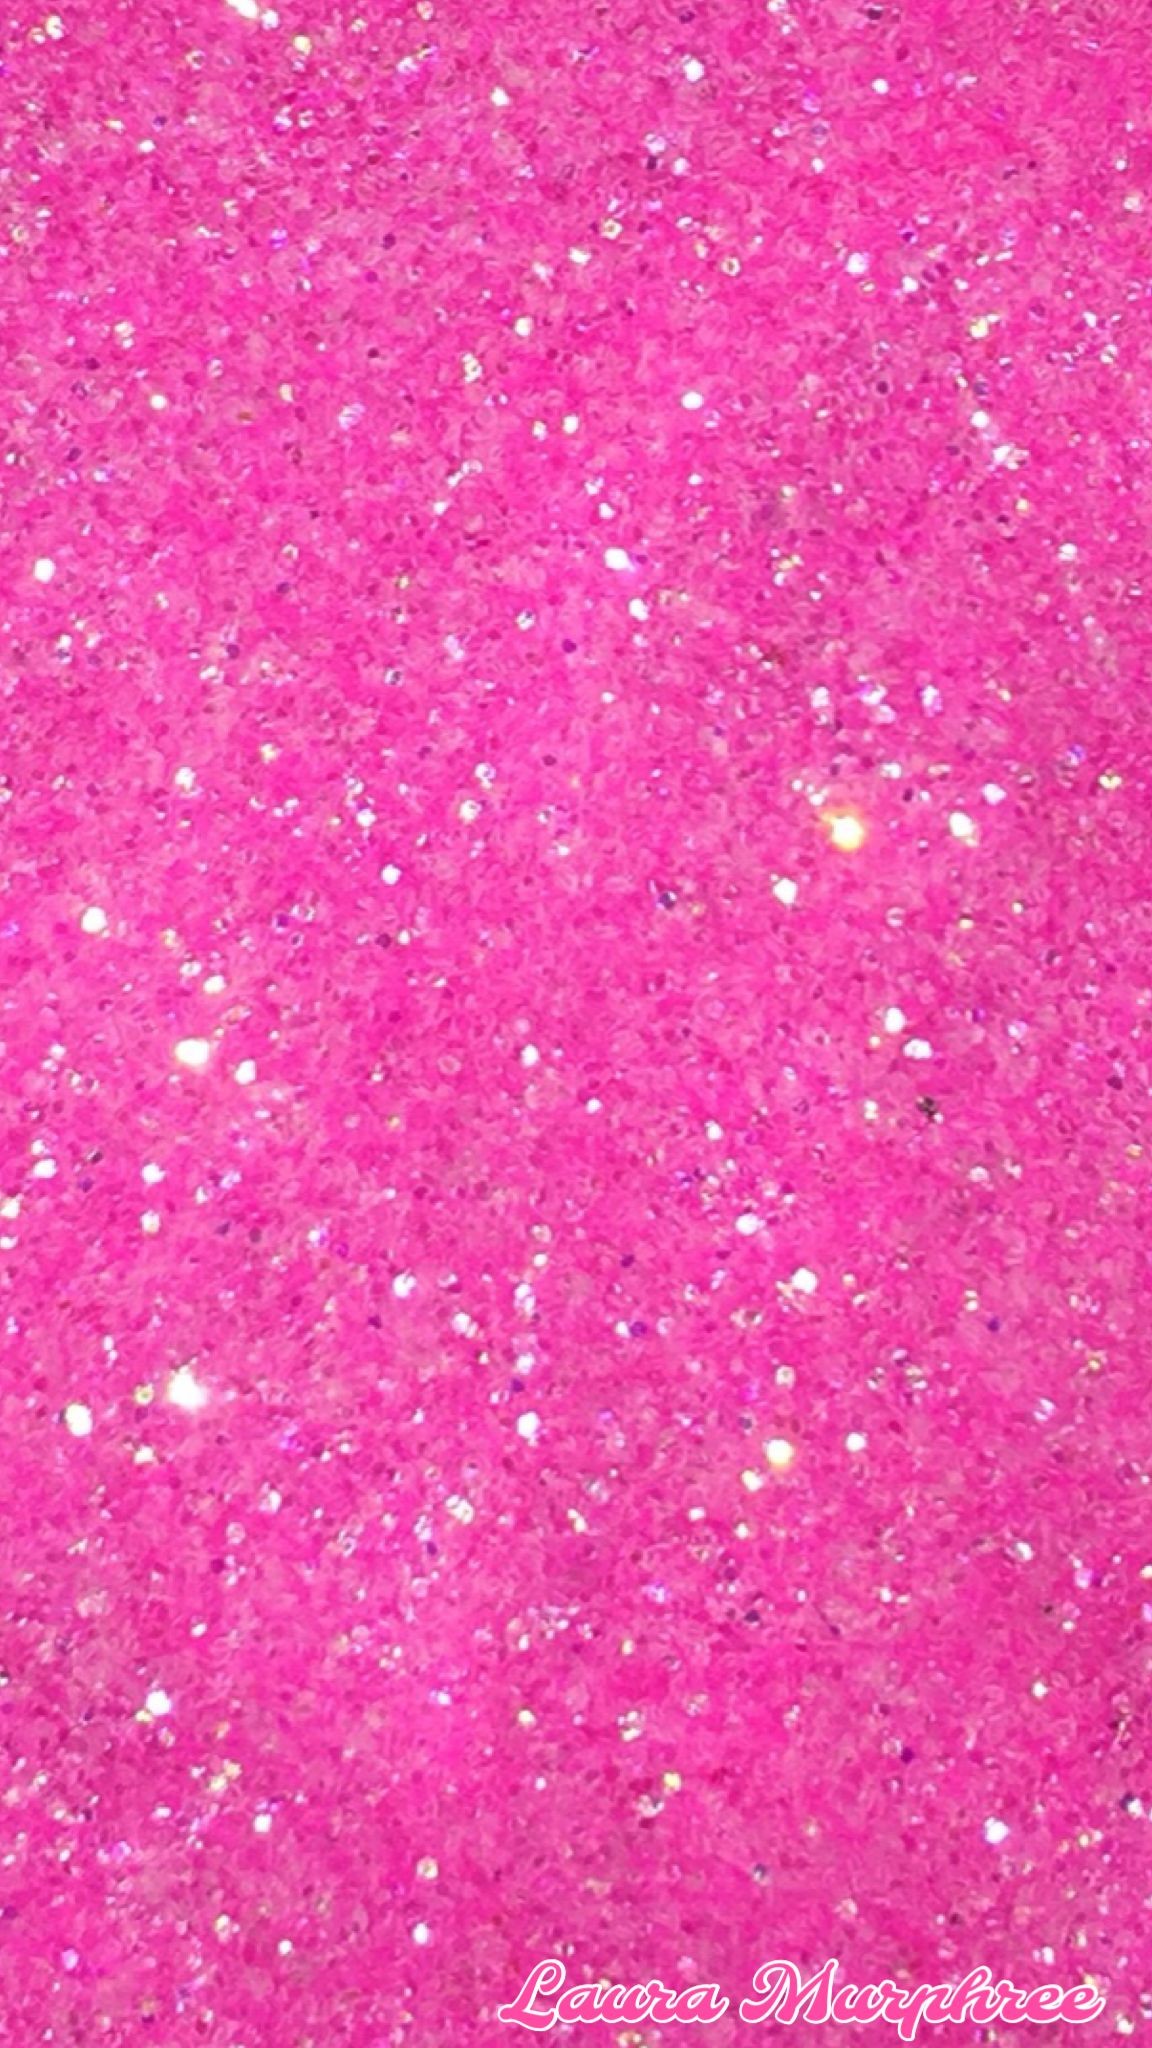 26+] Pink Glitter Phone Wallpapers - WallpaperSafari